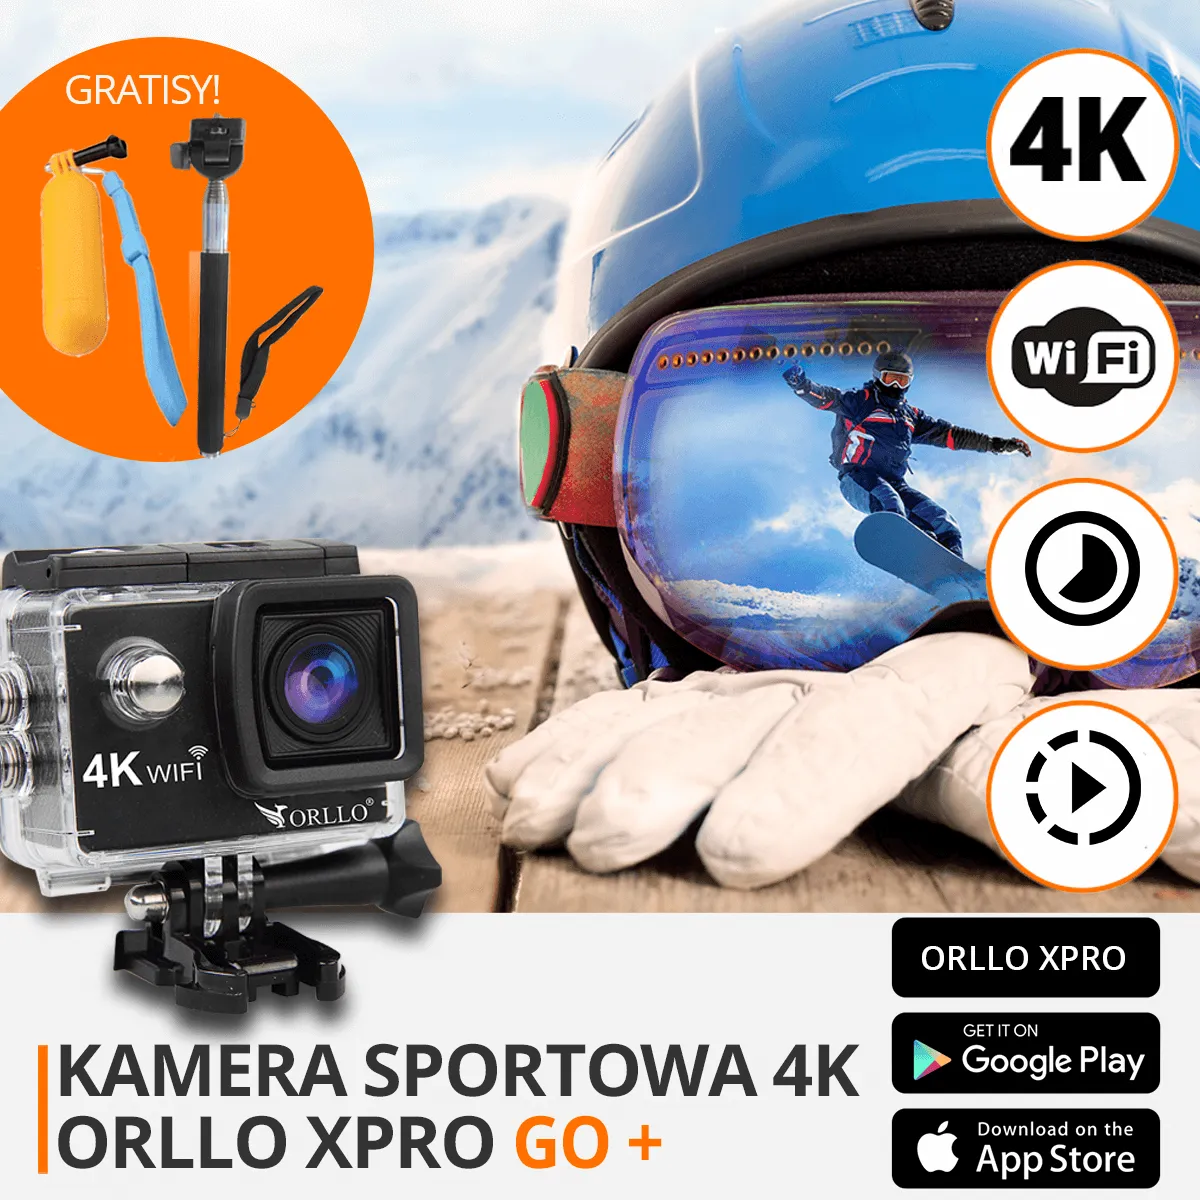 kamerka sportowa 4k XPRO GO funkcje